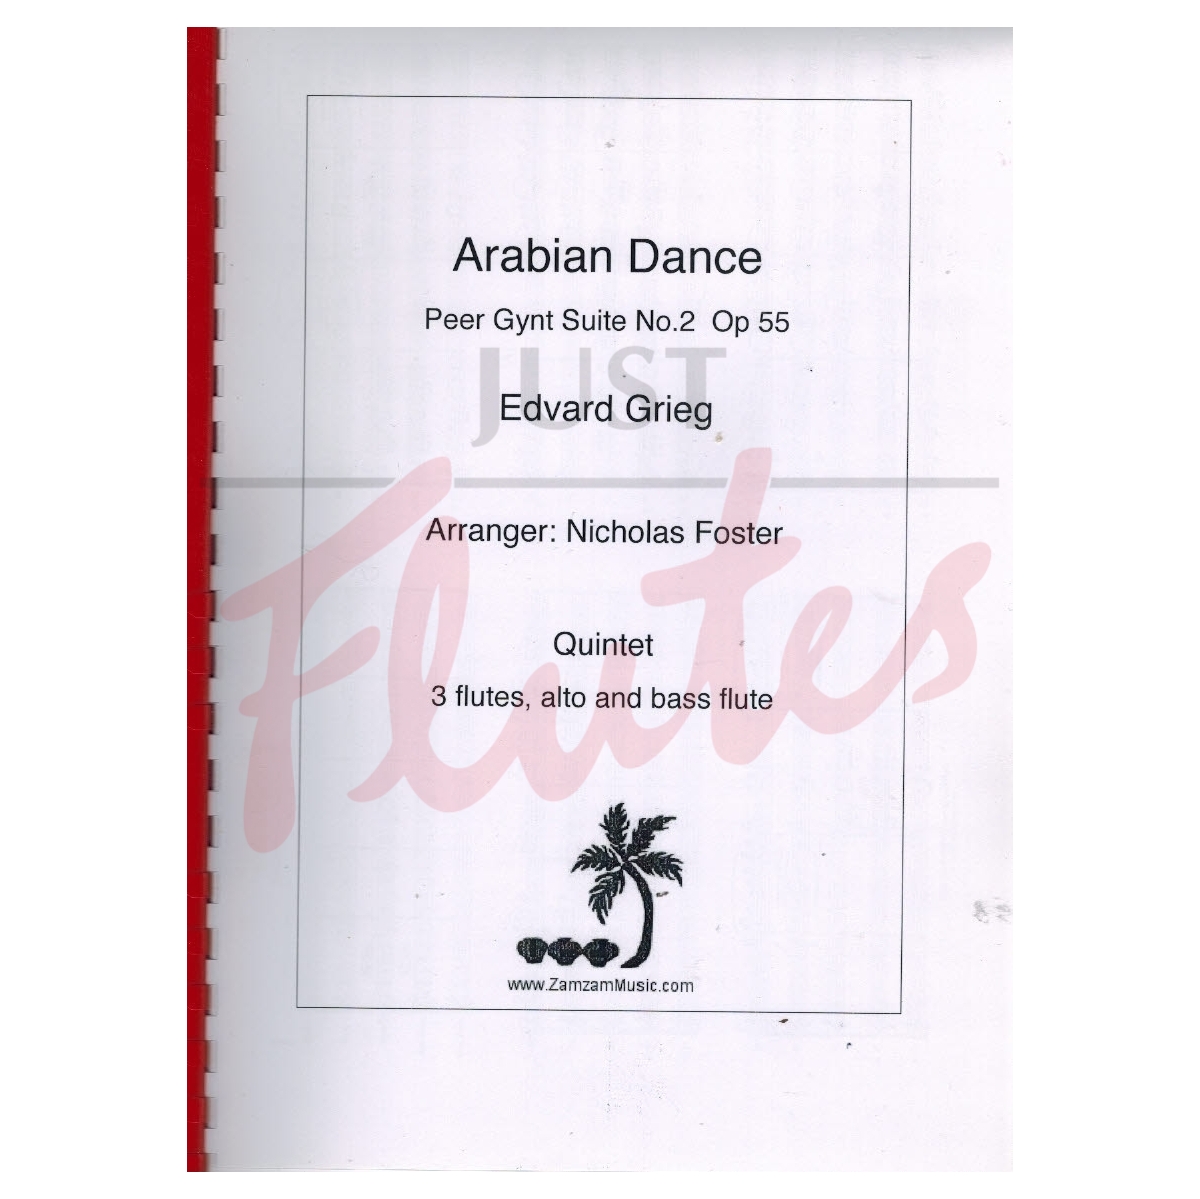 Peer Gynt Suite No 2: Arabian Dance